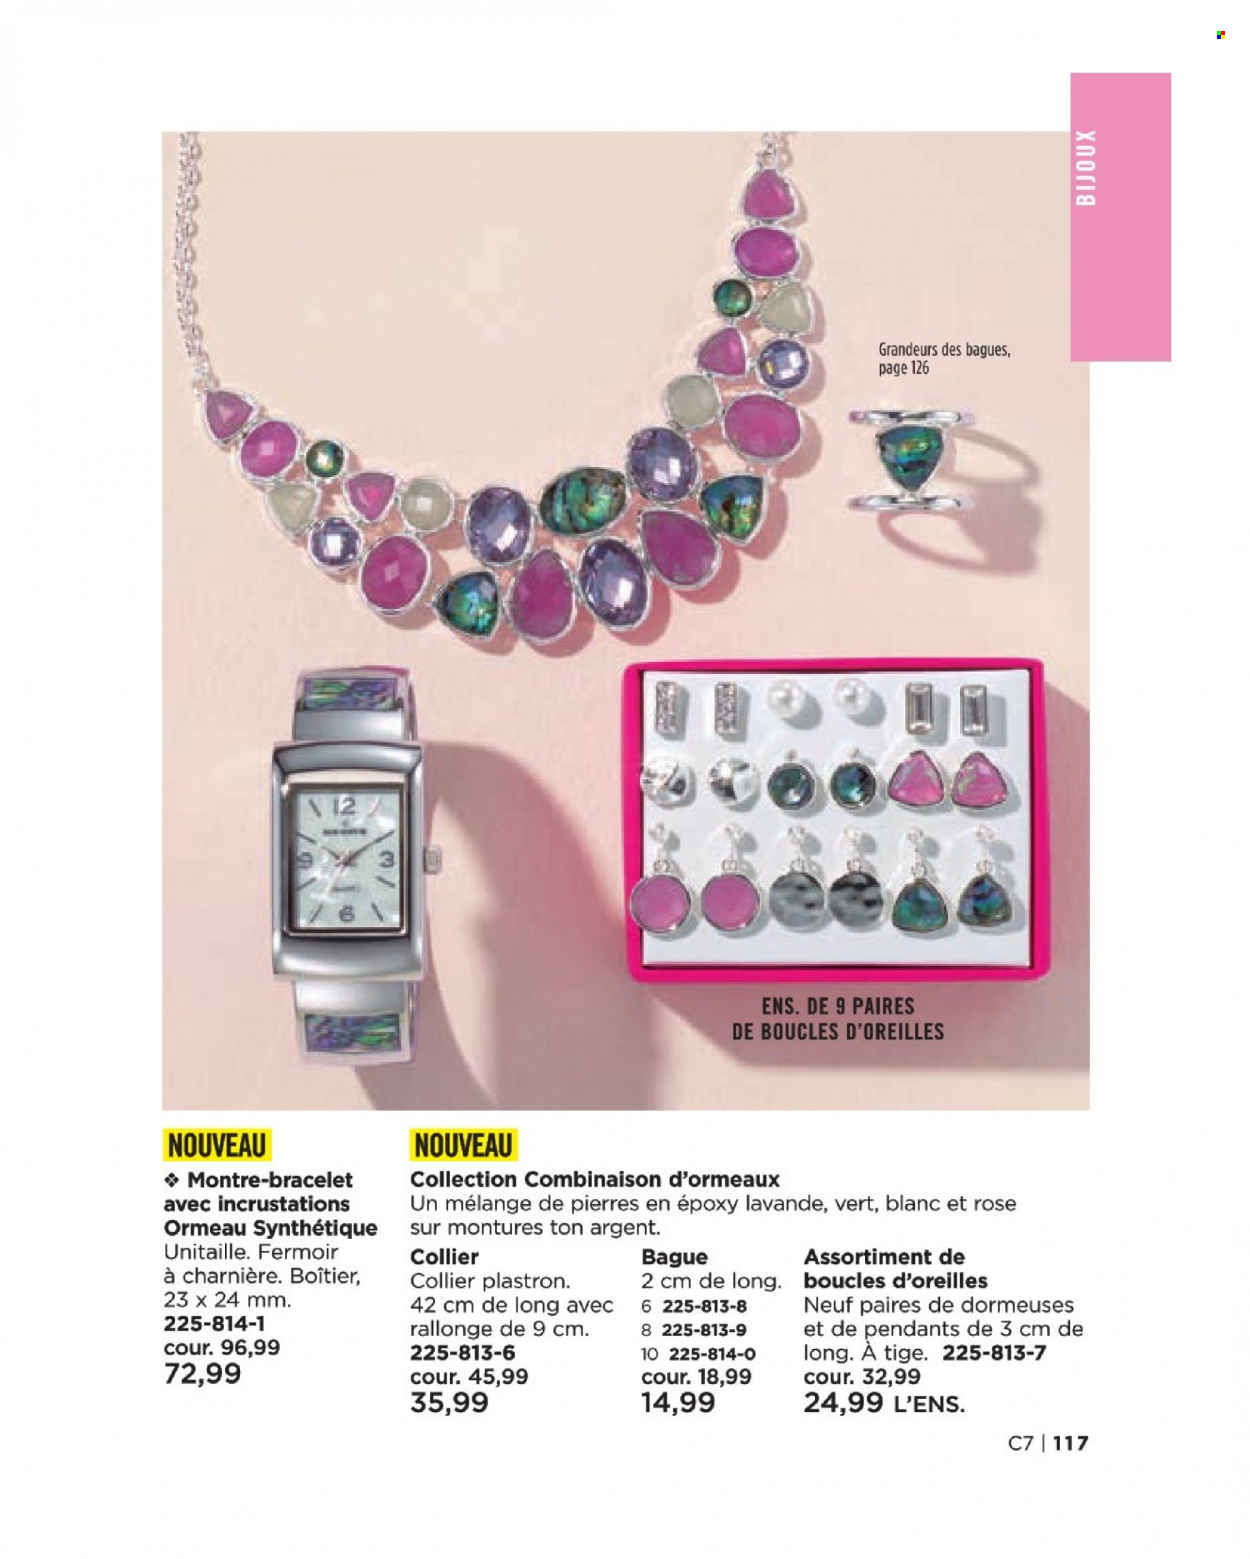 thumbnail - Circulaire Avon - Produits soldés - bague, bijouterie, montre, bracelet, boucles d'oreilles. Page 117.